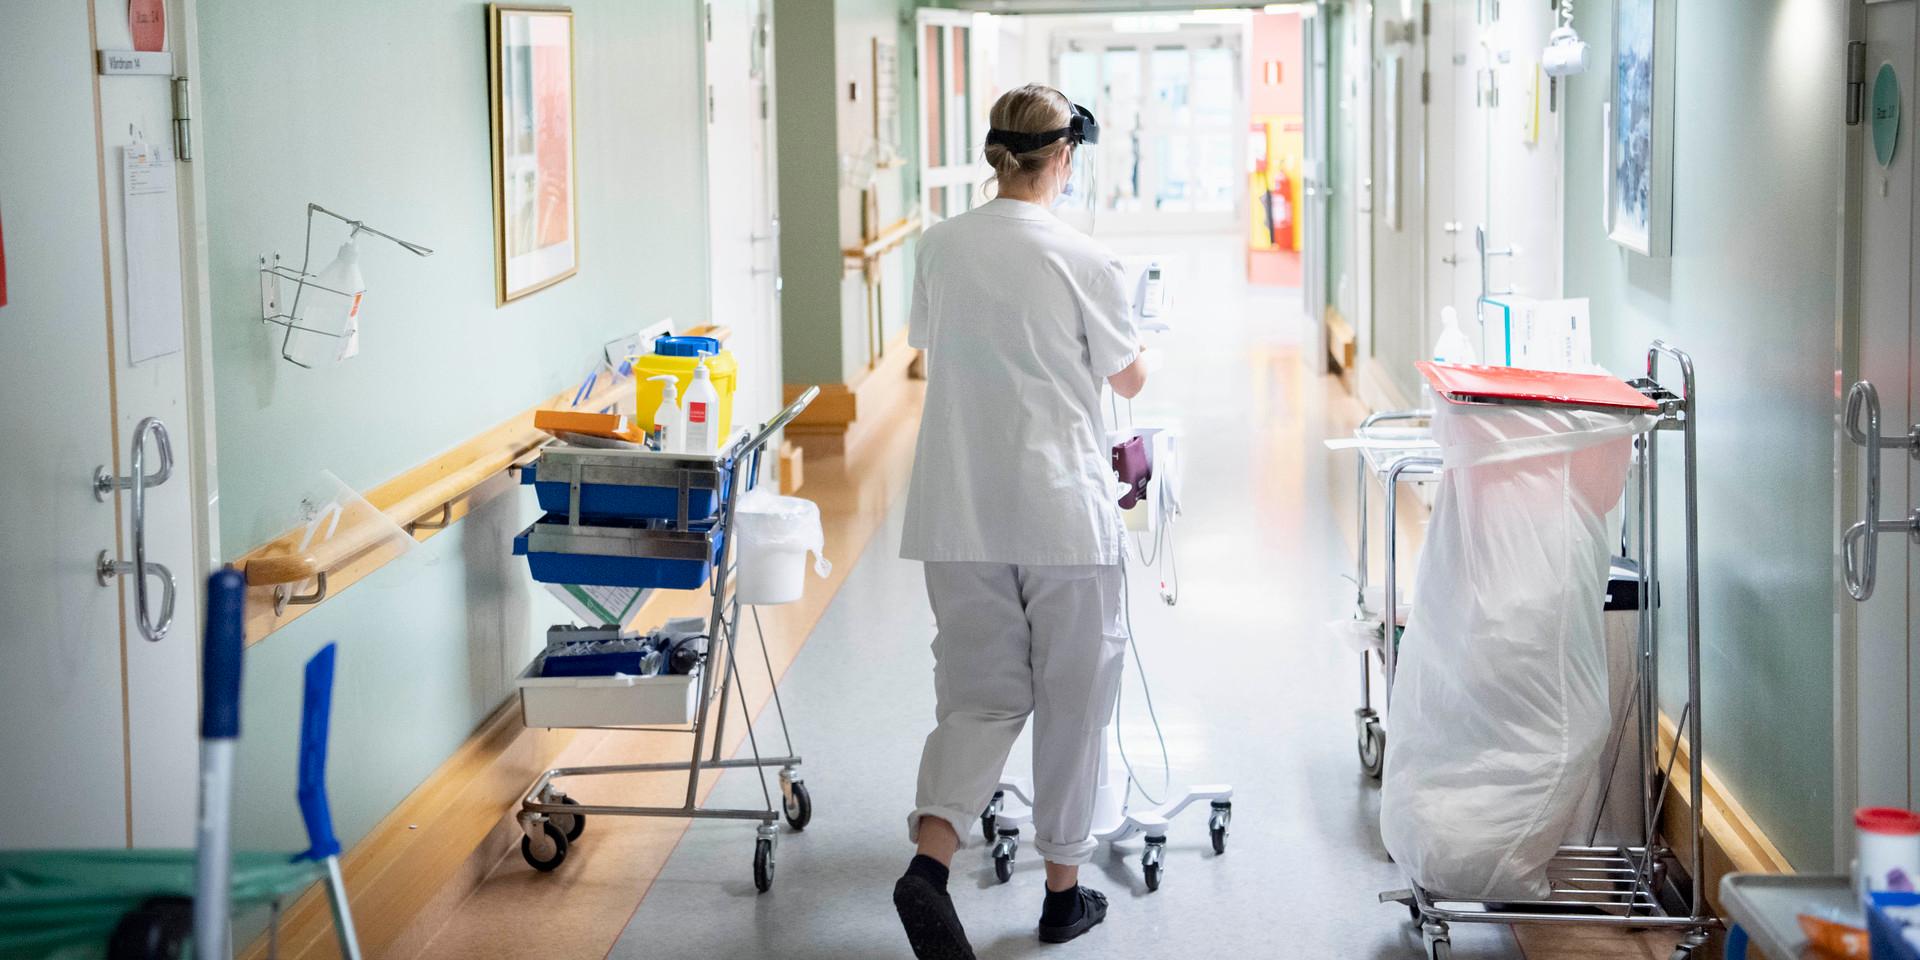 Centerpartiet anser att lönerna inom vårdsektorerna behöver höjas generellt i samhället, skriver Christian Lidén (C), ordförande driftnämnd Hallands sjukhus.